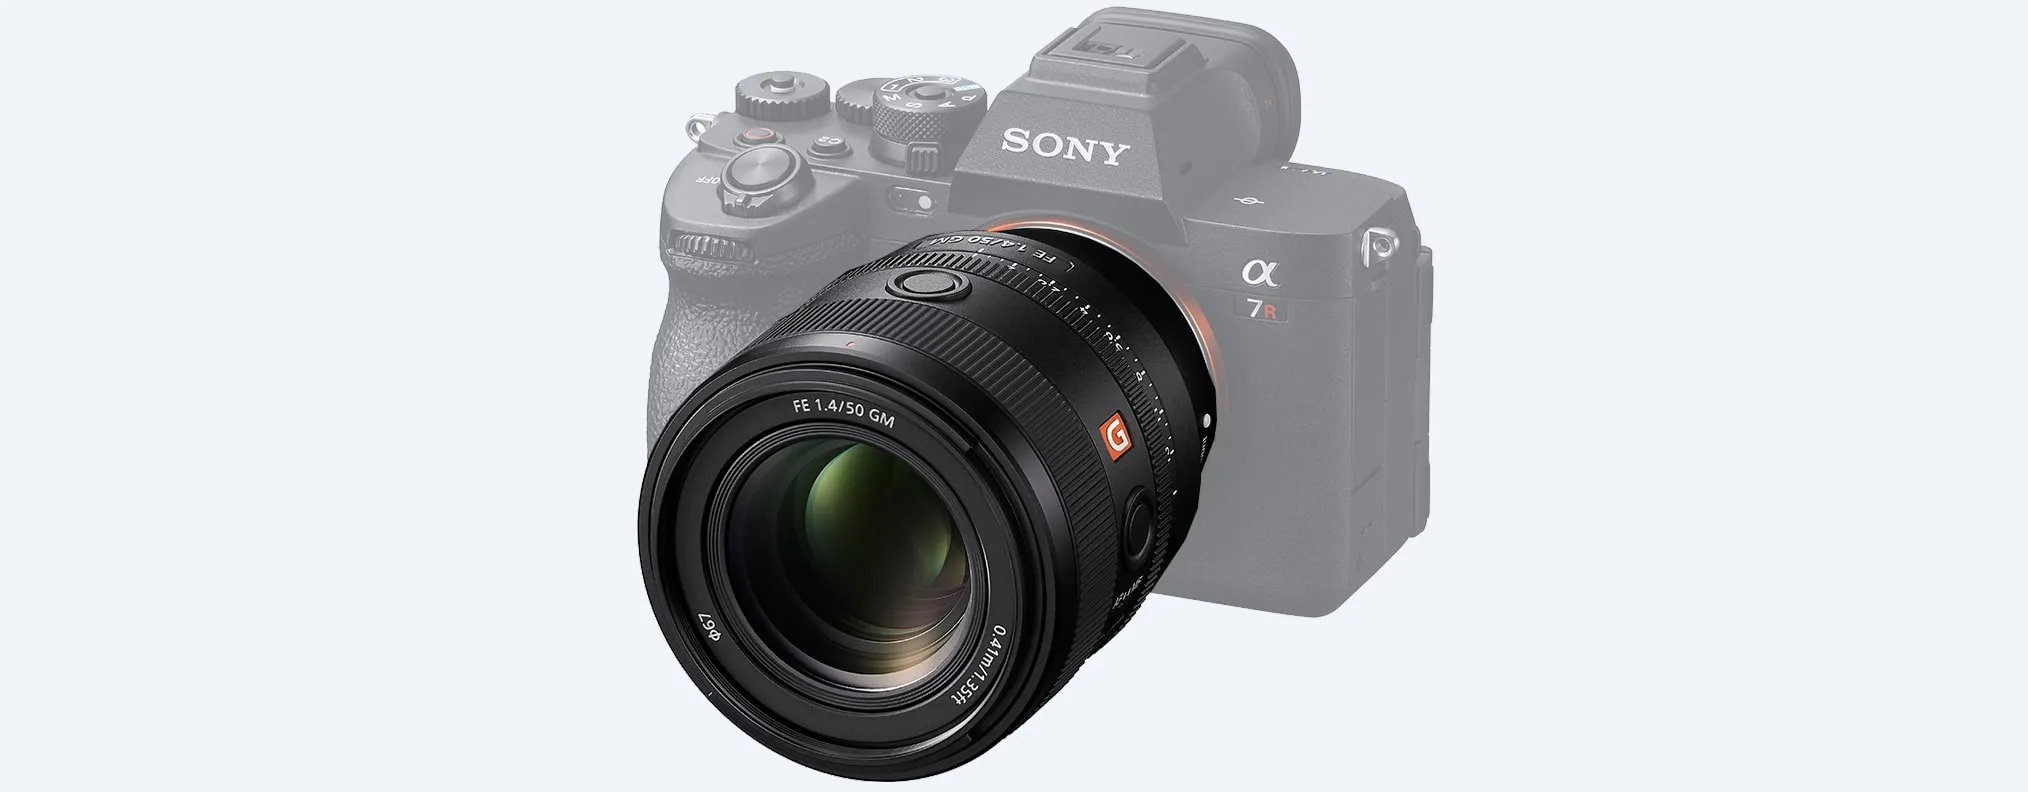 Sony ra mắt ống kính full-frame nhỏ gọn FE 50mm F1.4 GM, giá 34,490,000 VND